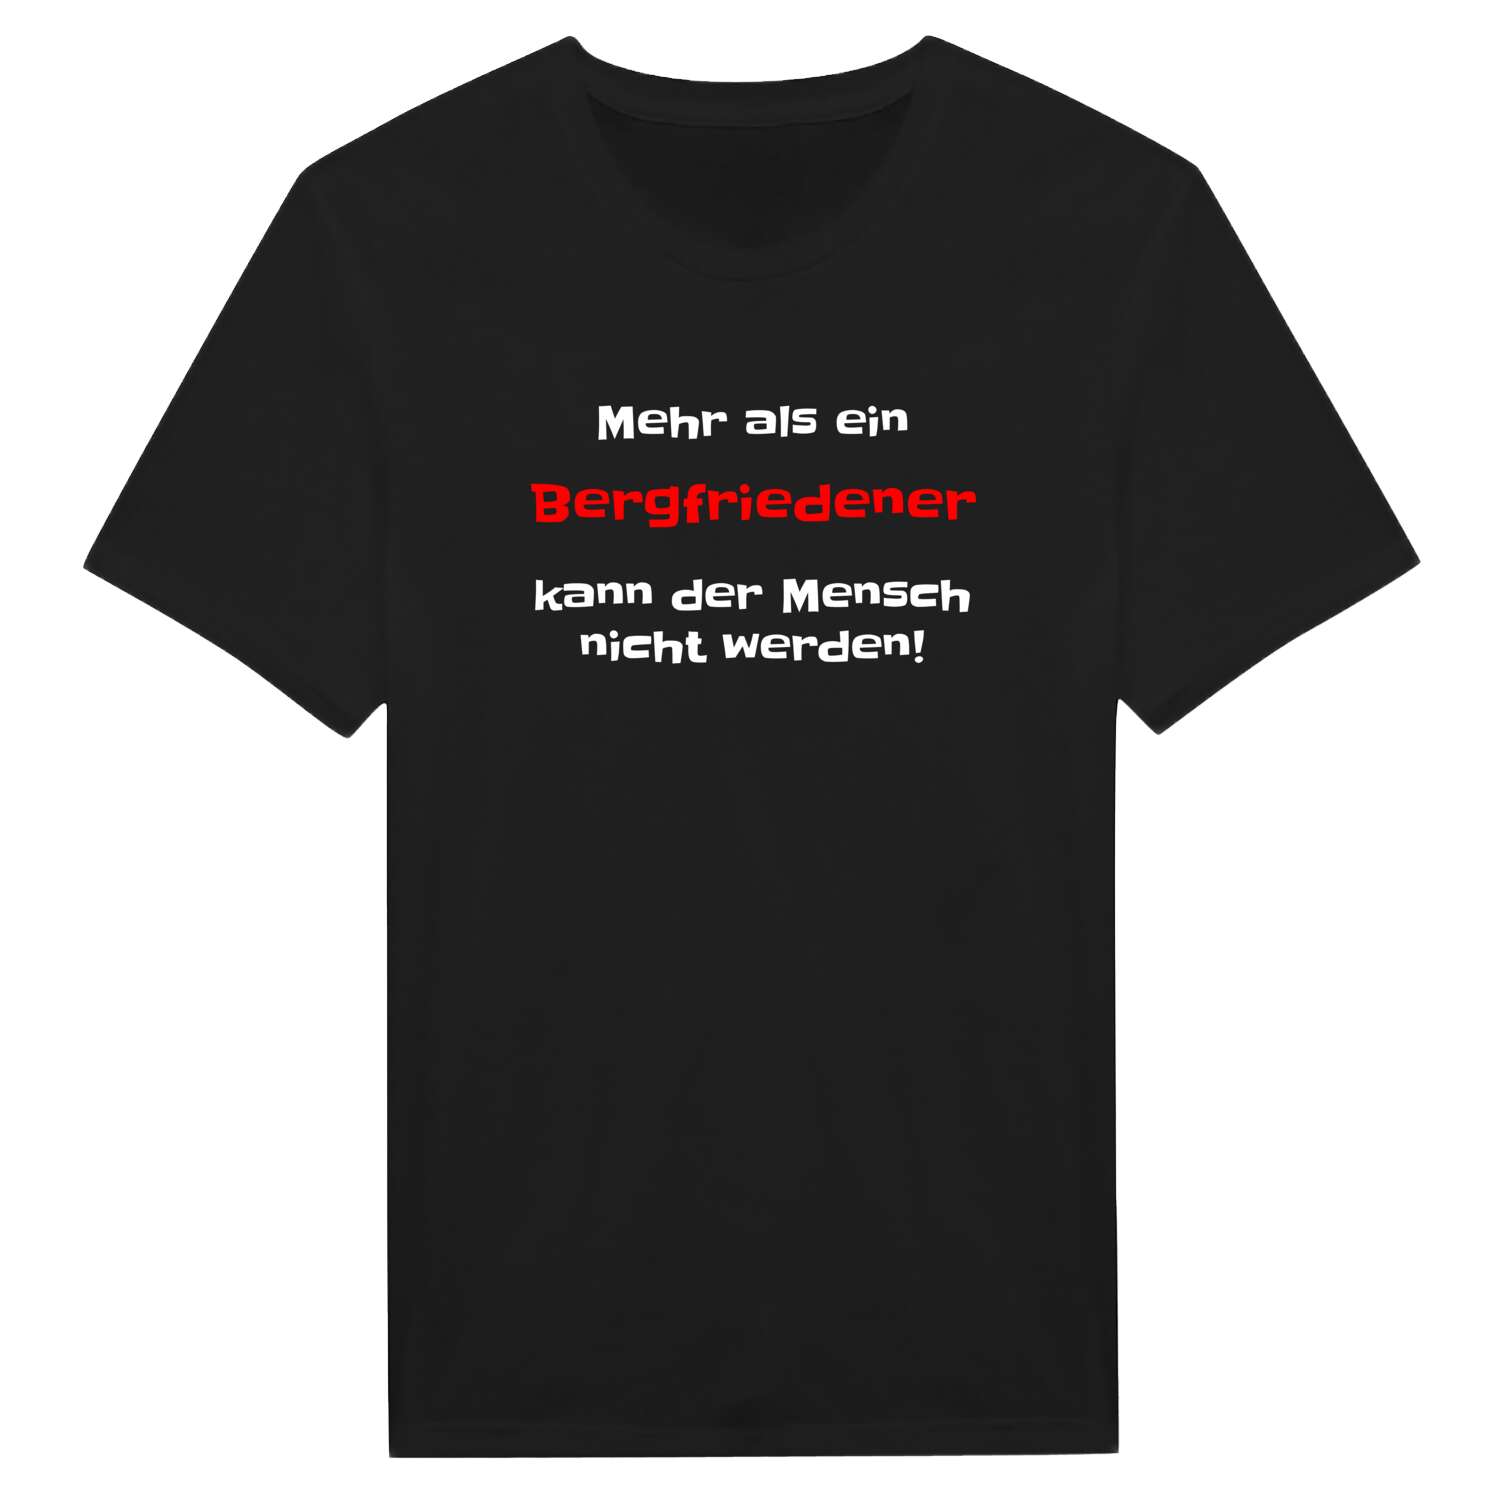 Bergfriede T-Shirt »Mehr als ein«